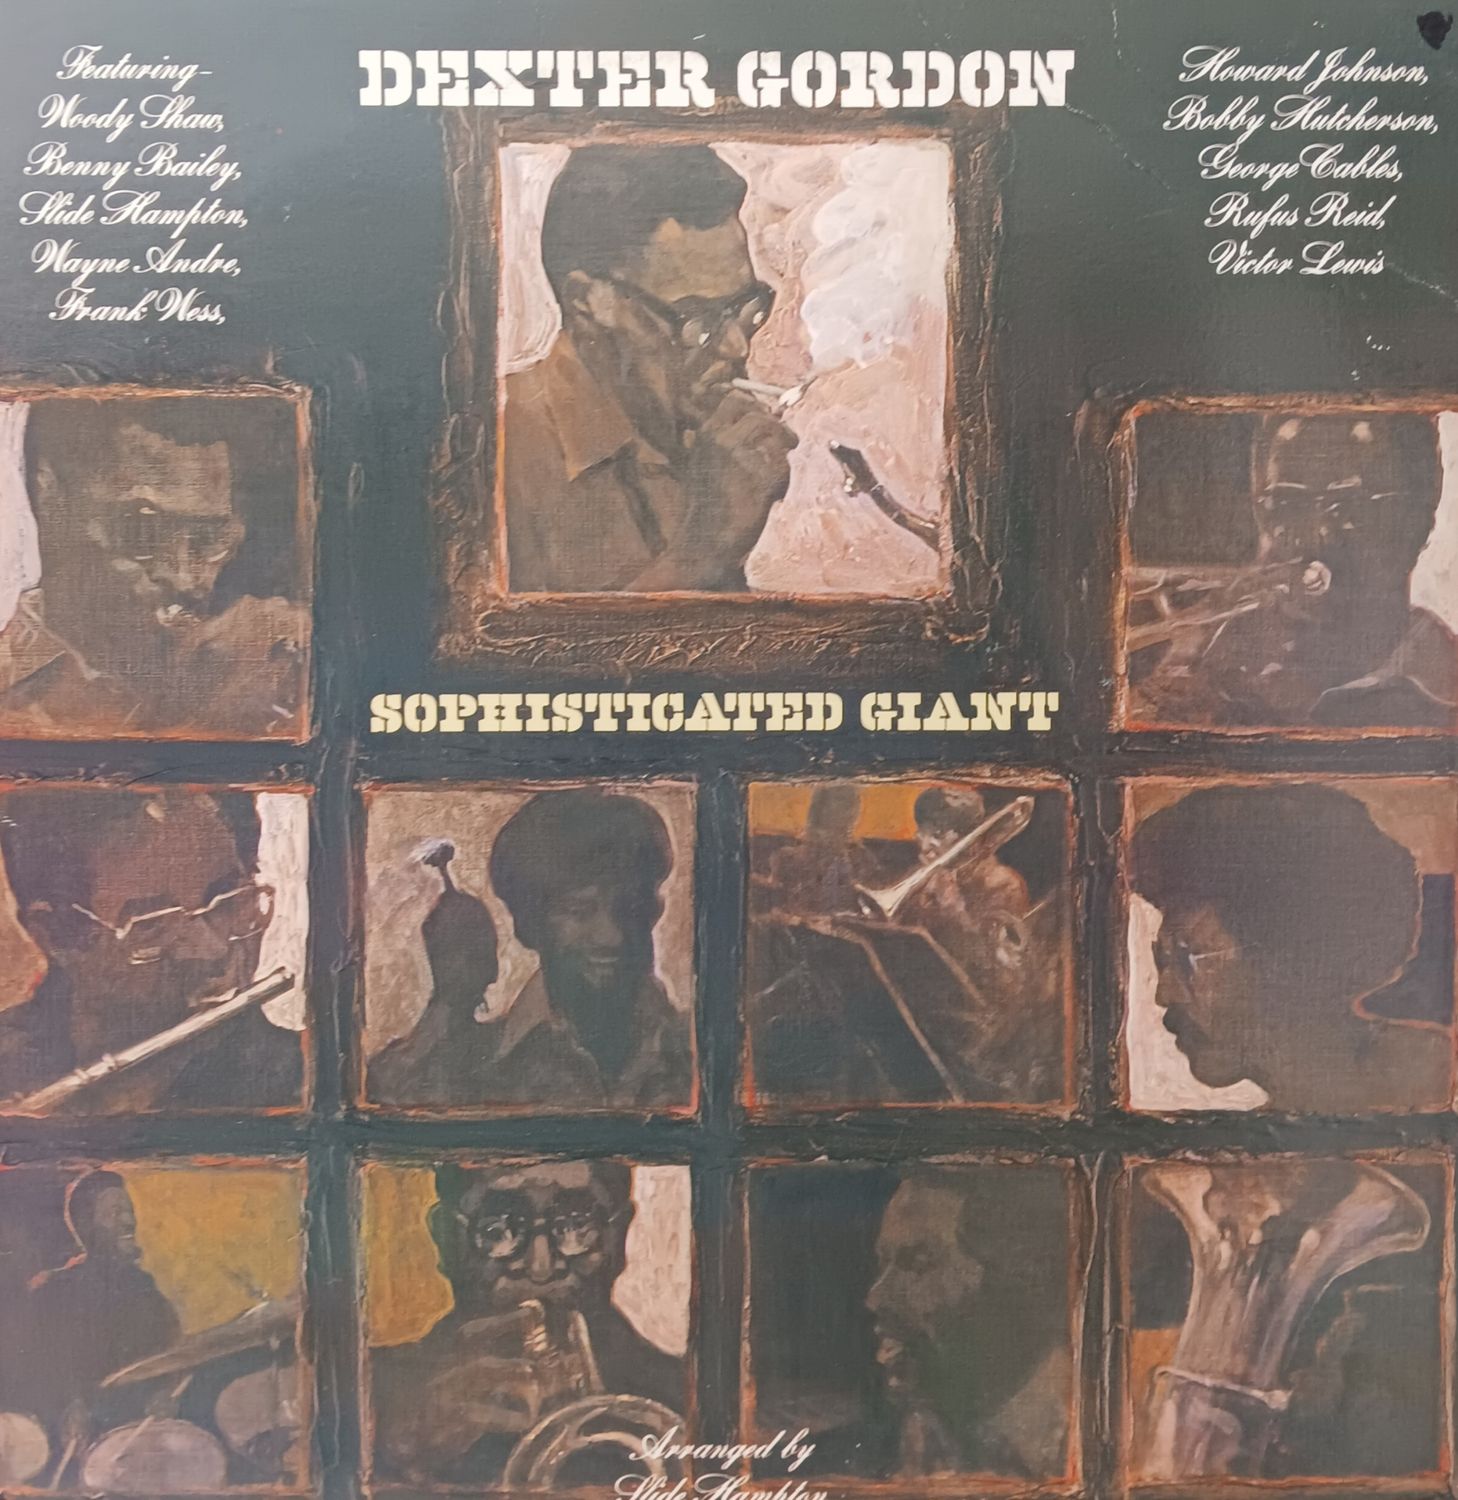 DEXTER GORDON - Sophisticated Giant